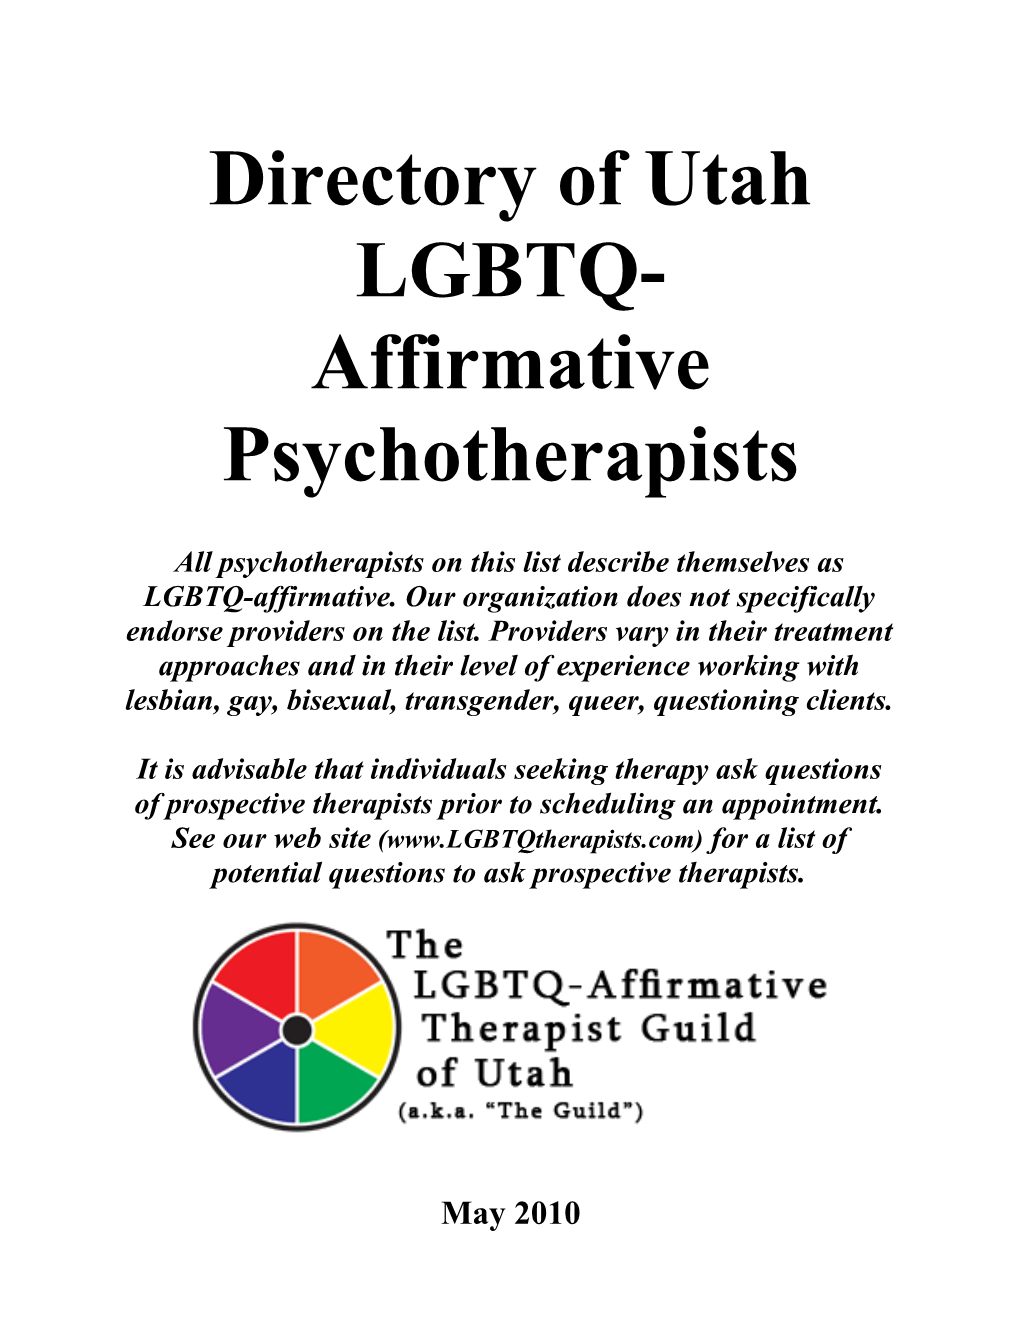 Directory of Utah LGBTQ